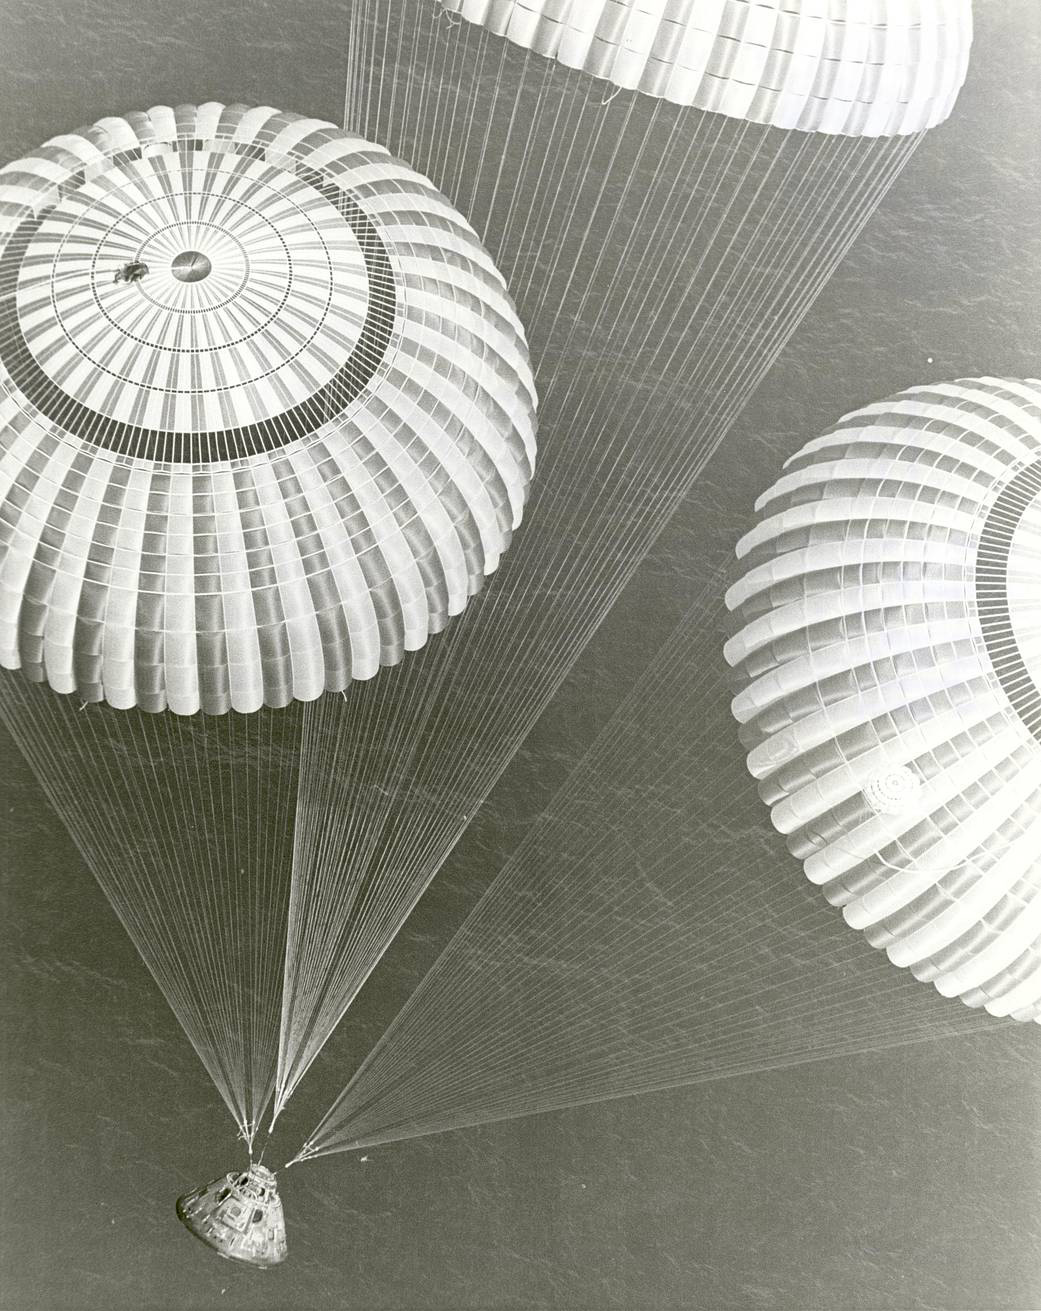 Apollo 17 module and parachutes landing over ocean